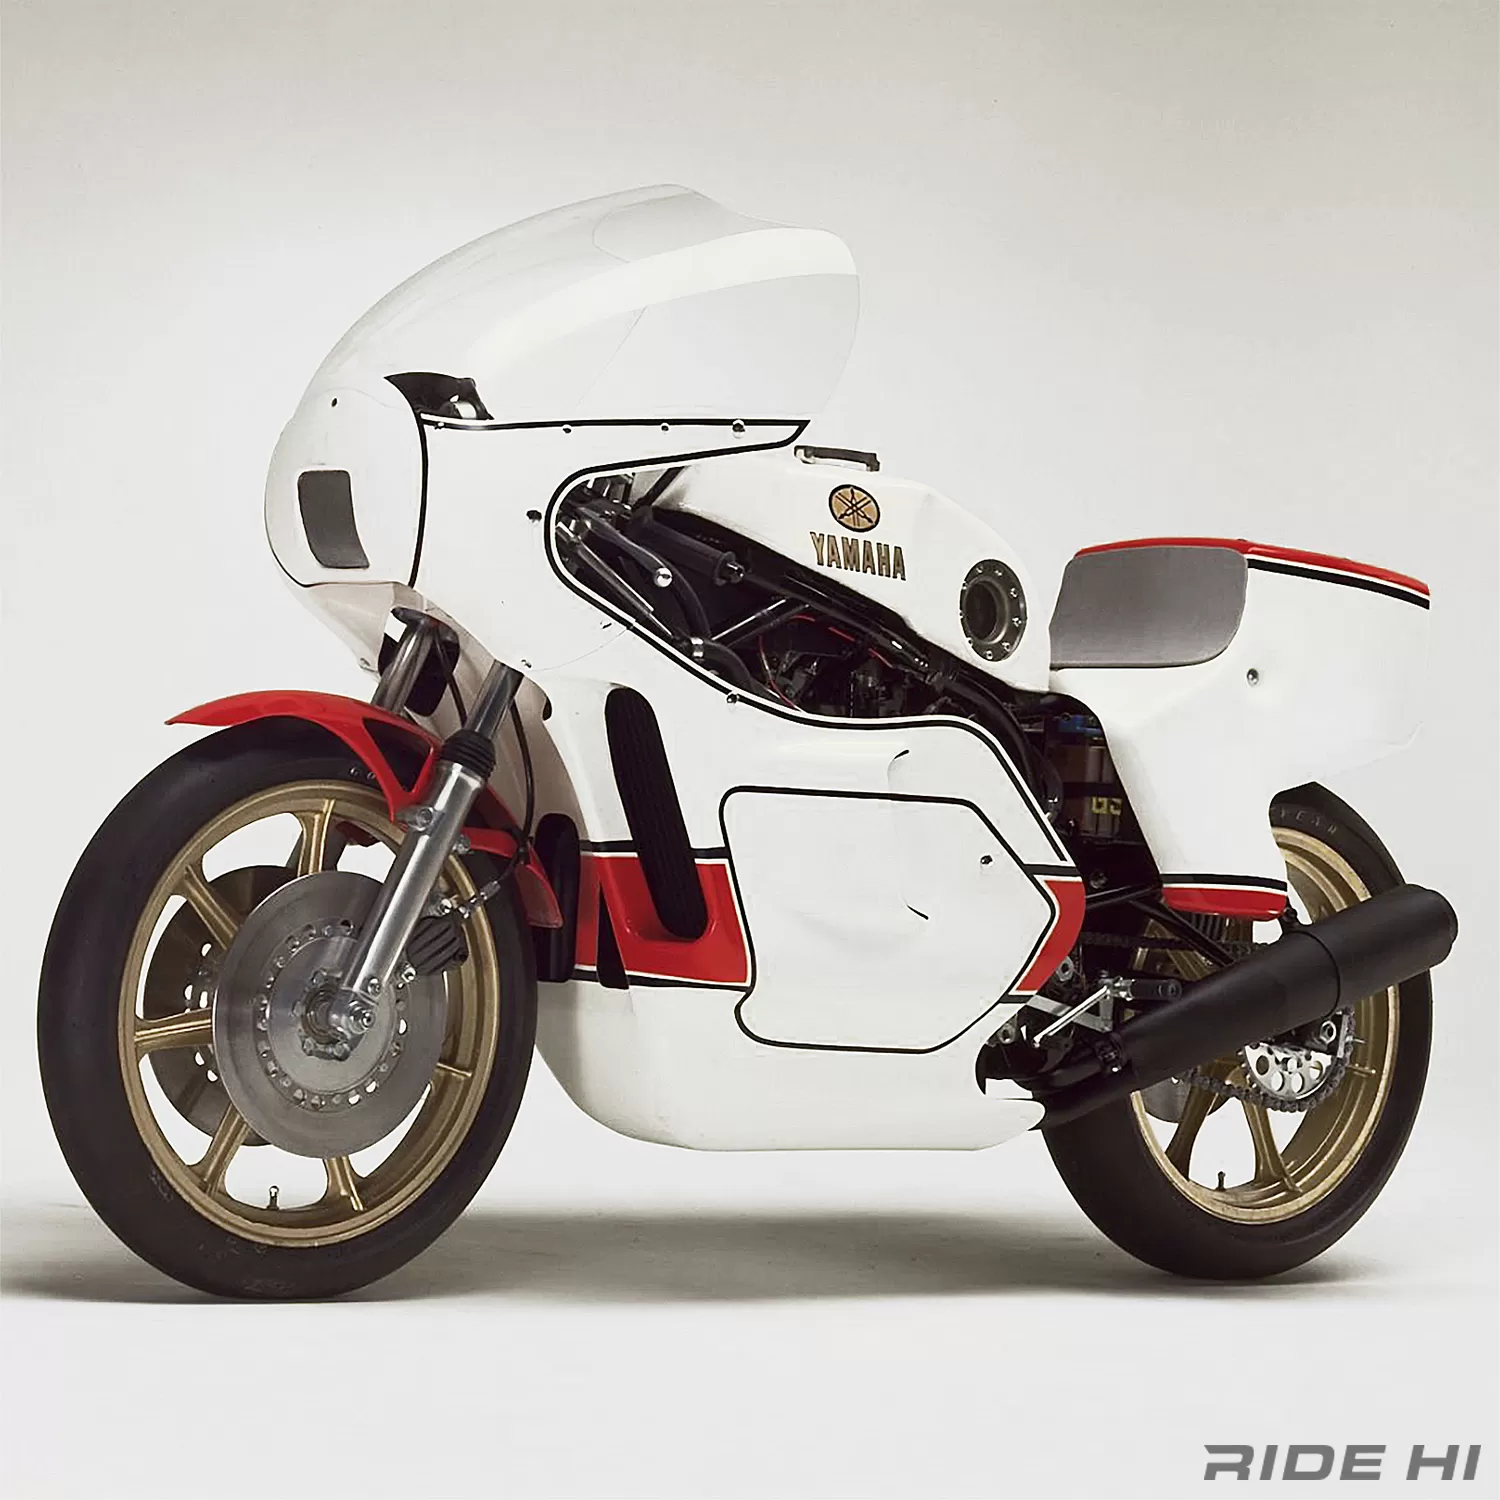 初のV4スーパーバイクを披露したのはヤマハだった！ | このバイクに注目 | RIDE HI(ライドハイ)/愉しさのためすべてを注ぐライダーのメディア